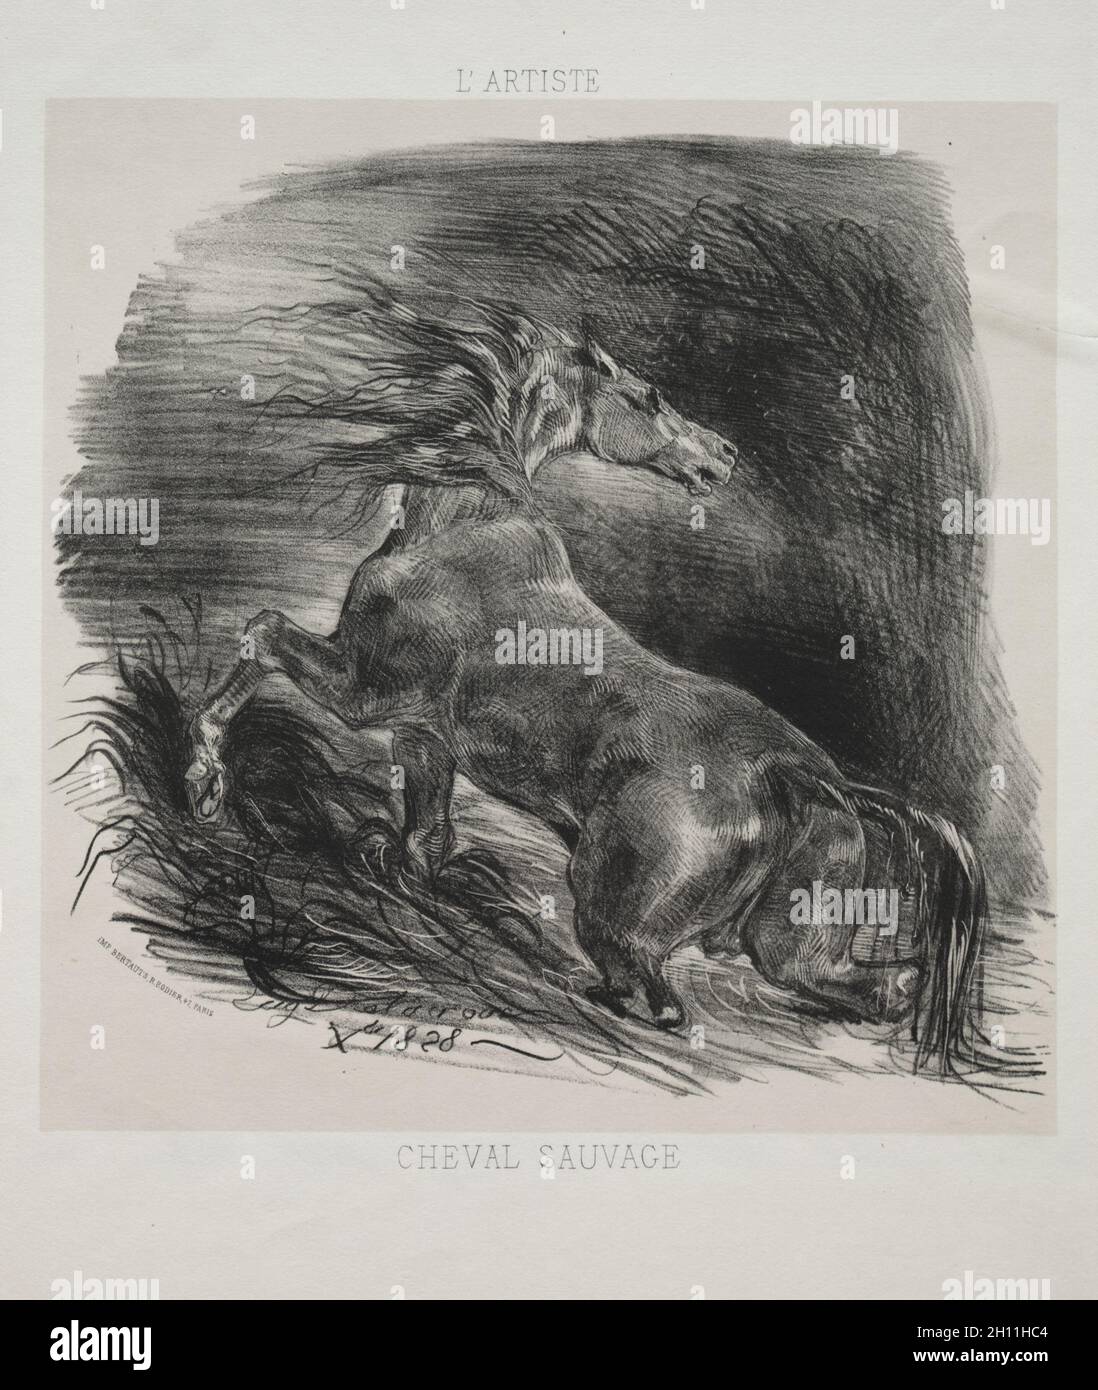 Le cheval sauvage, ou le cheval effrayé quittant l'eau, 1828.Eugène Delacroix (français, 1798-1863), l'artiste.Lithographie aux teintes beige; feuille: 36.1 x 27.4 cm (14 3/16 x 10 13/16 po.); image: 23 x 23.9 cm (9 1/16 x 9 7/16 po.). Banque D'Images